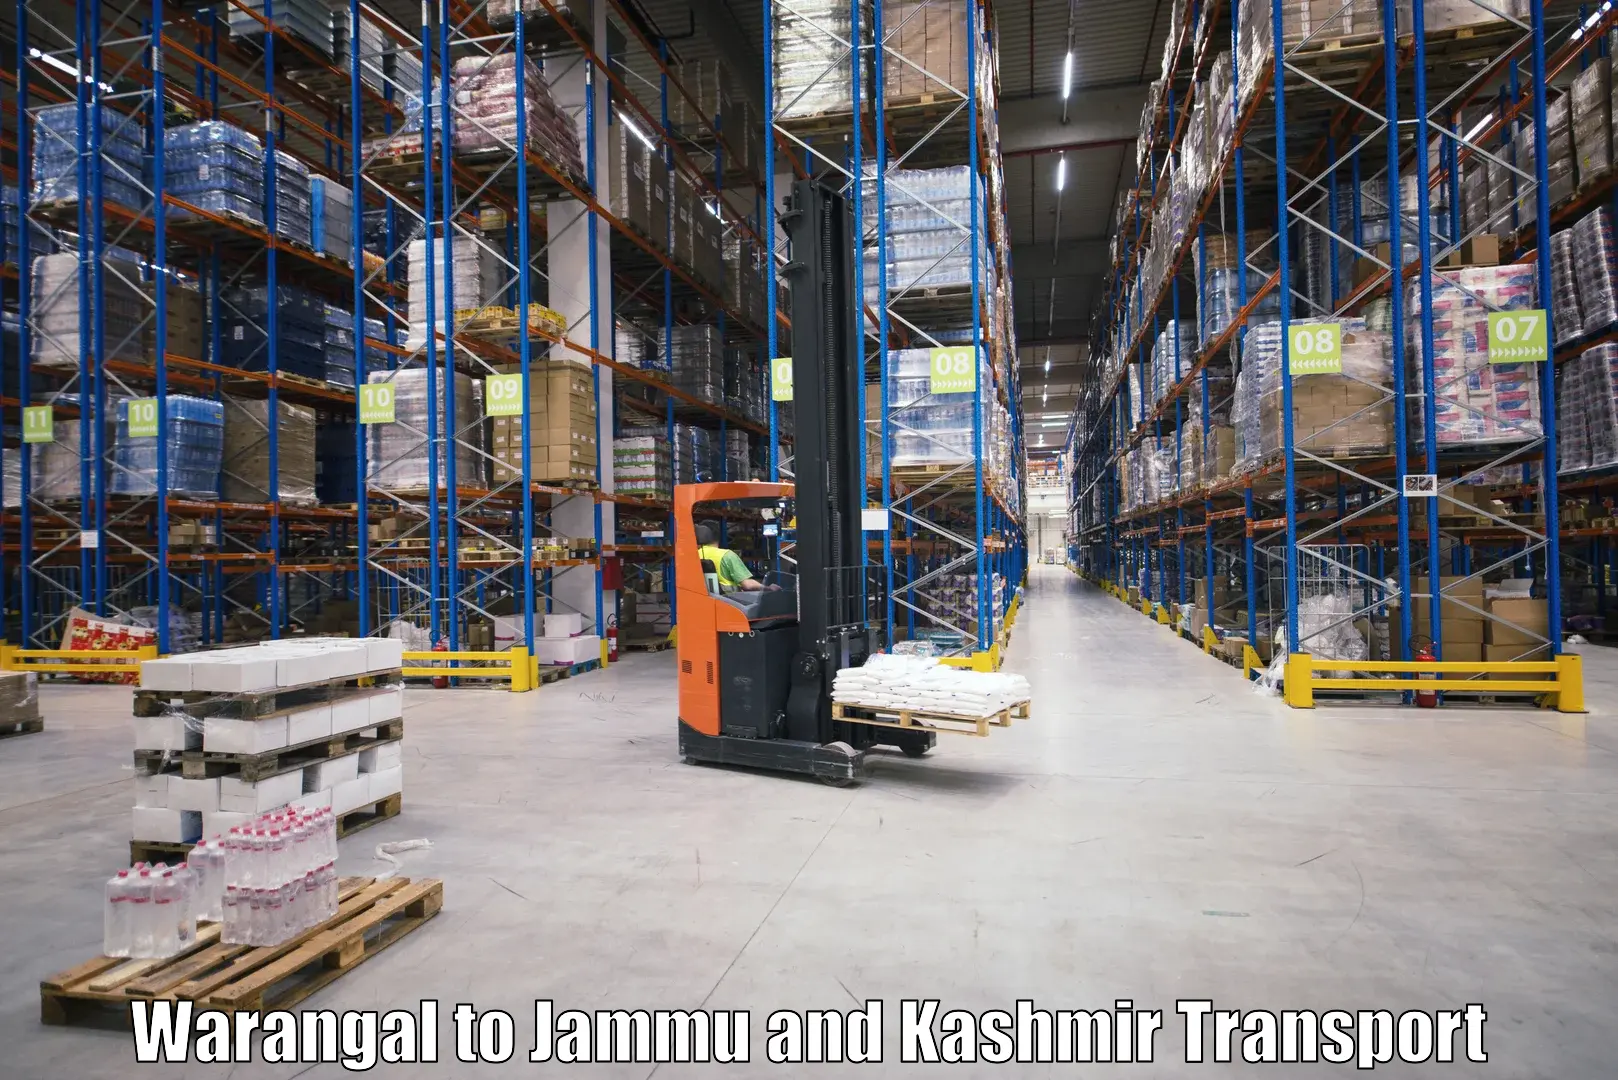 Air freight transport services Warangal to Kargil